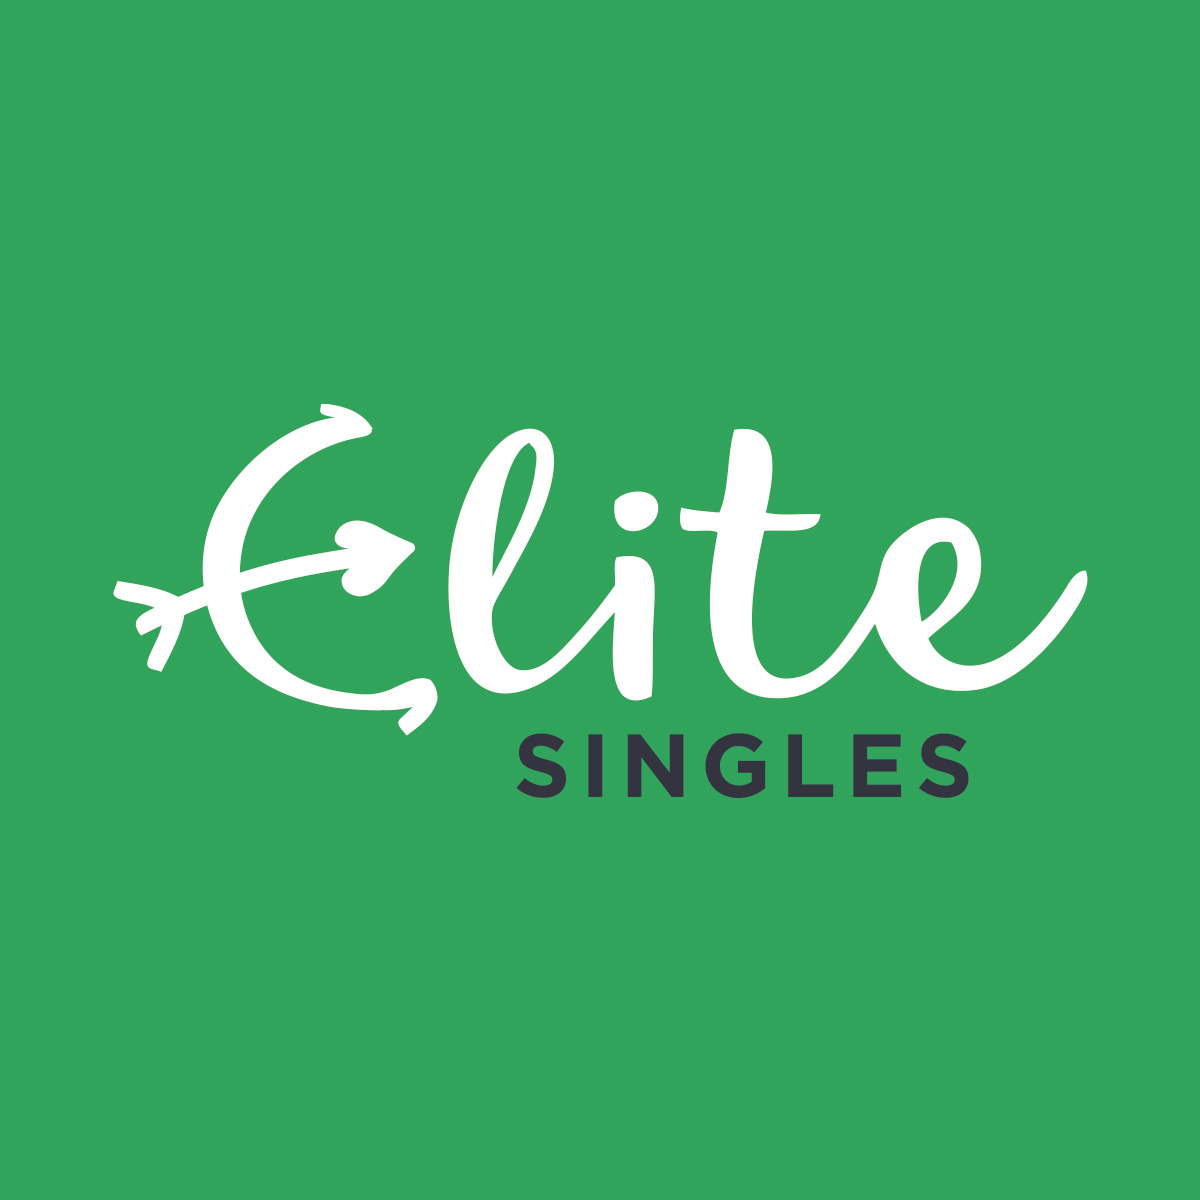 Elite dating uk in Abidjan